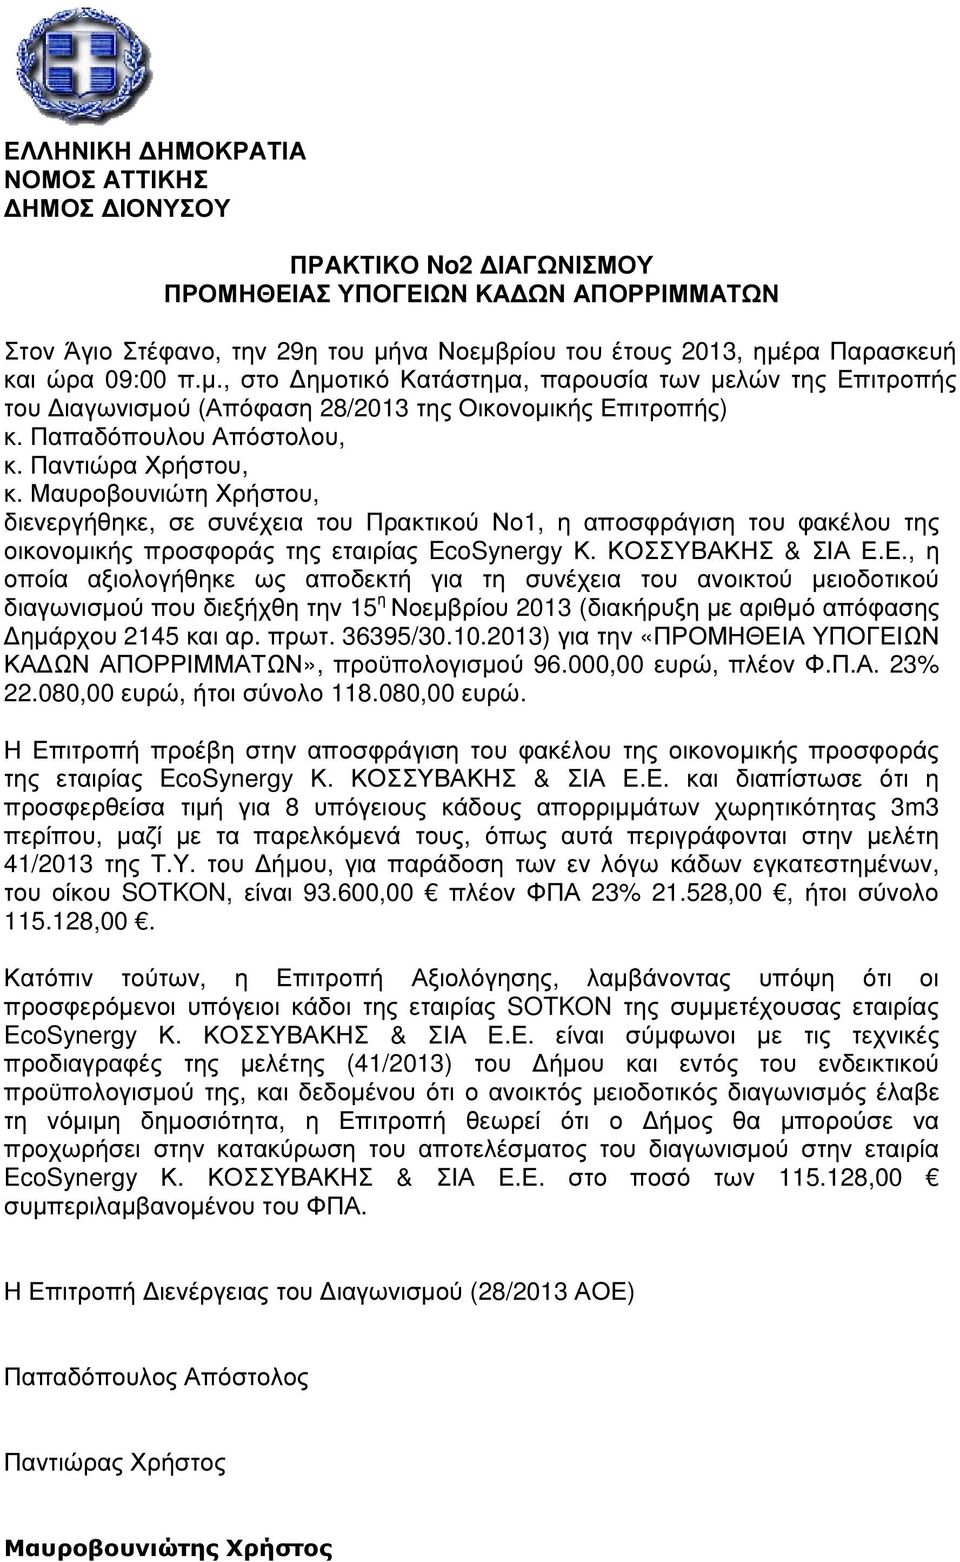 Μαυροβουνιώτη Χρήστου, διενεργήθηκε, σε συνέχεια του Πρακτικού Νο1, η αποσφράγιση του φακέλου της οικονοµικής προσφοράς της εταιρίας EcoSynergy Κ. ΚΟΣΣΥΒΑΚΗΣ & ΣΙΑ Ε.